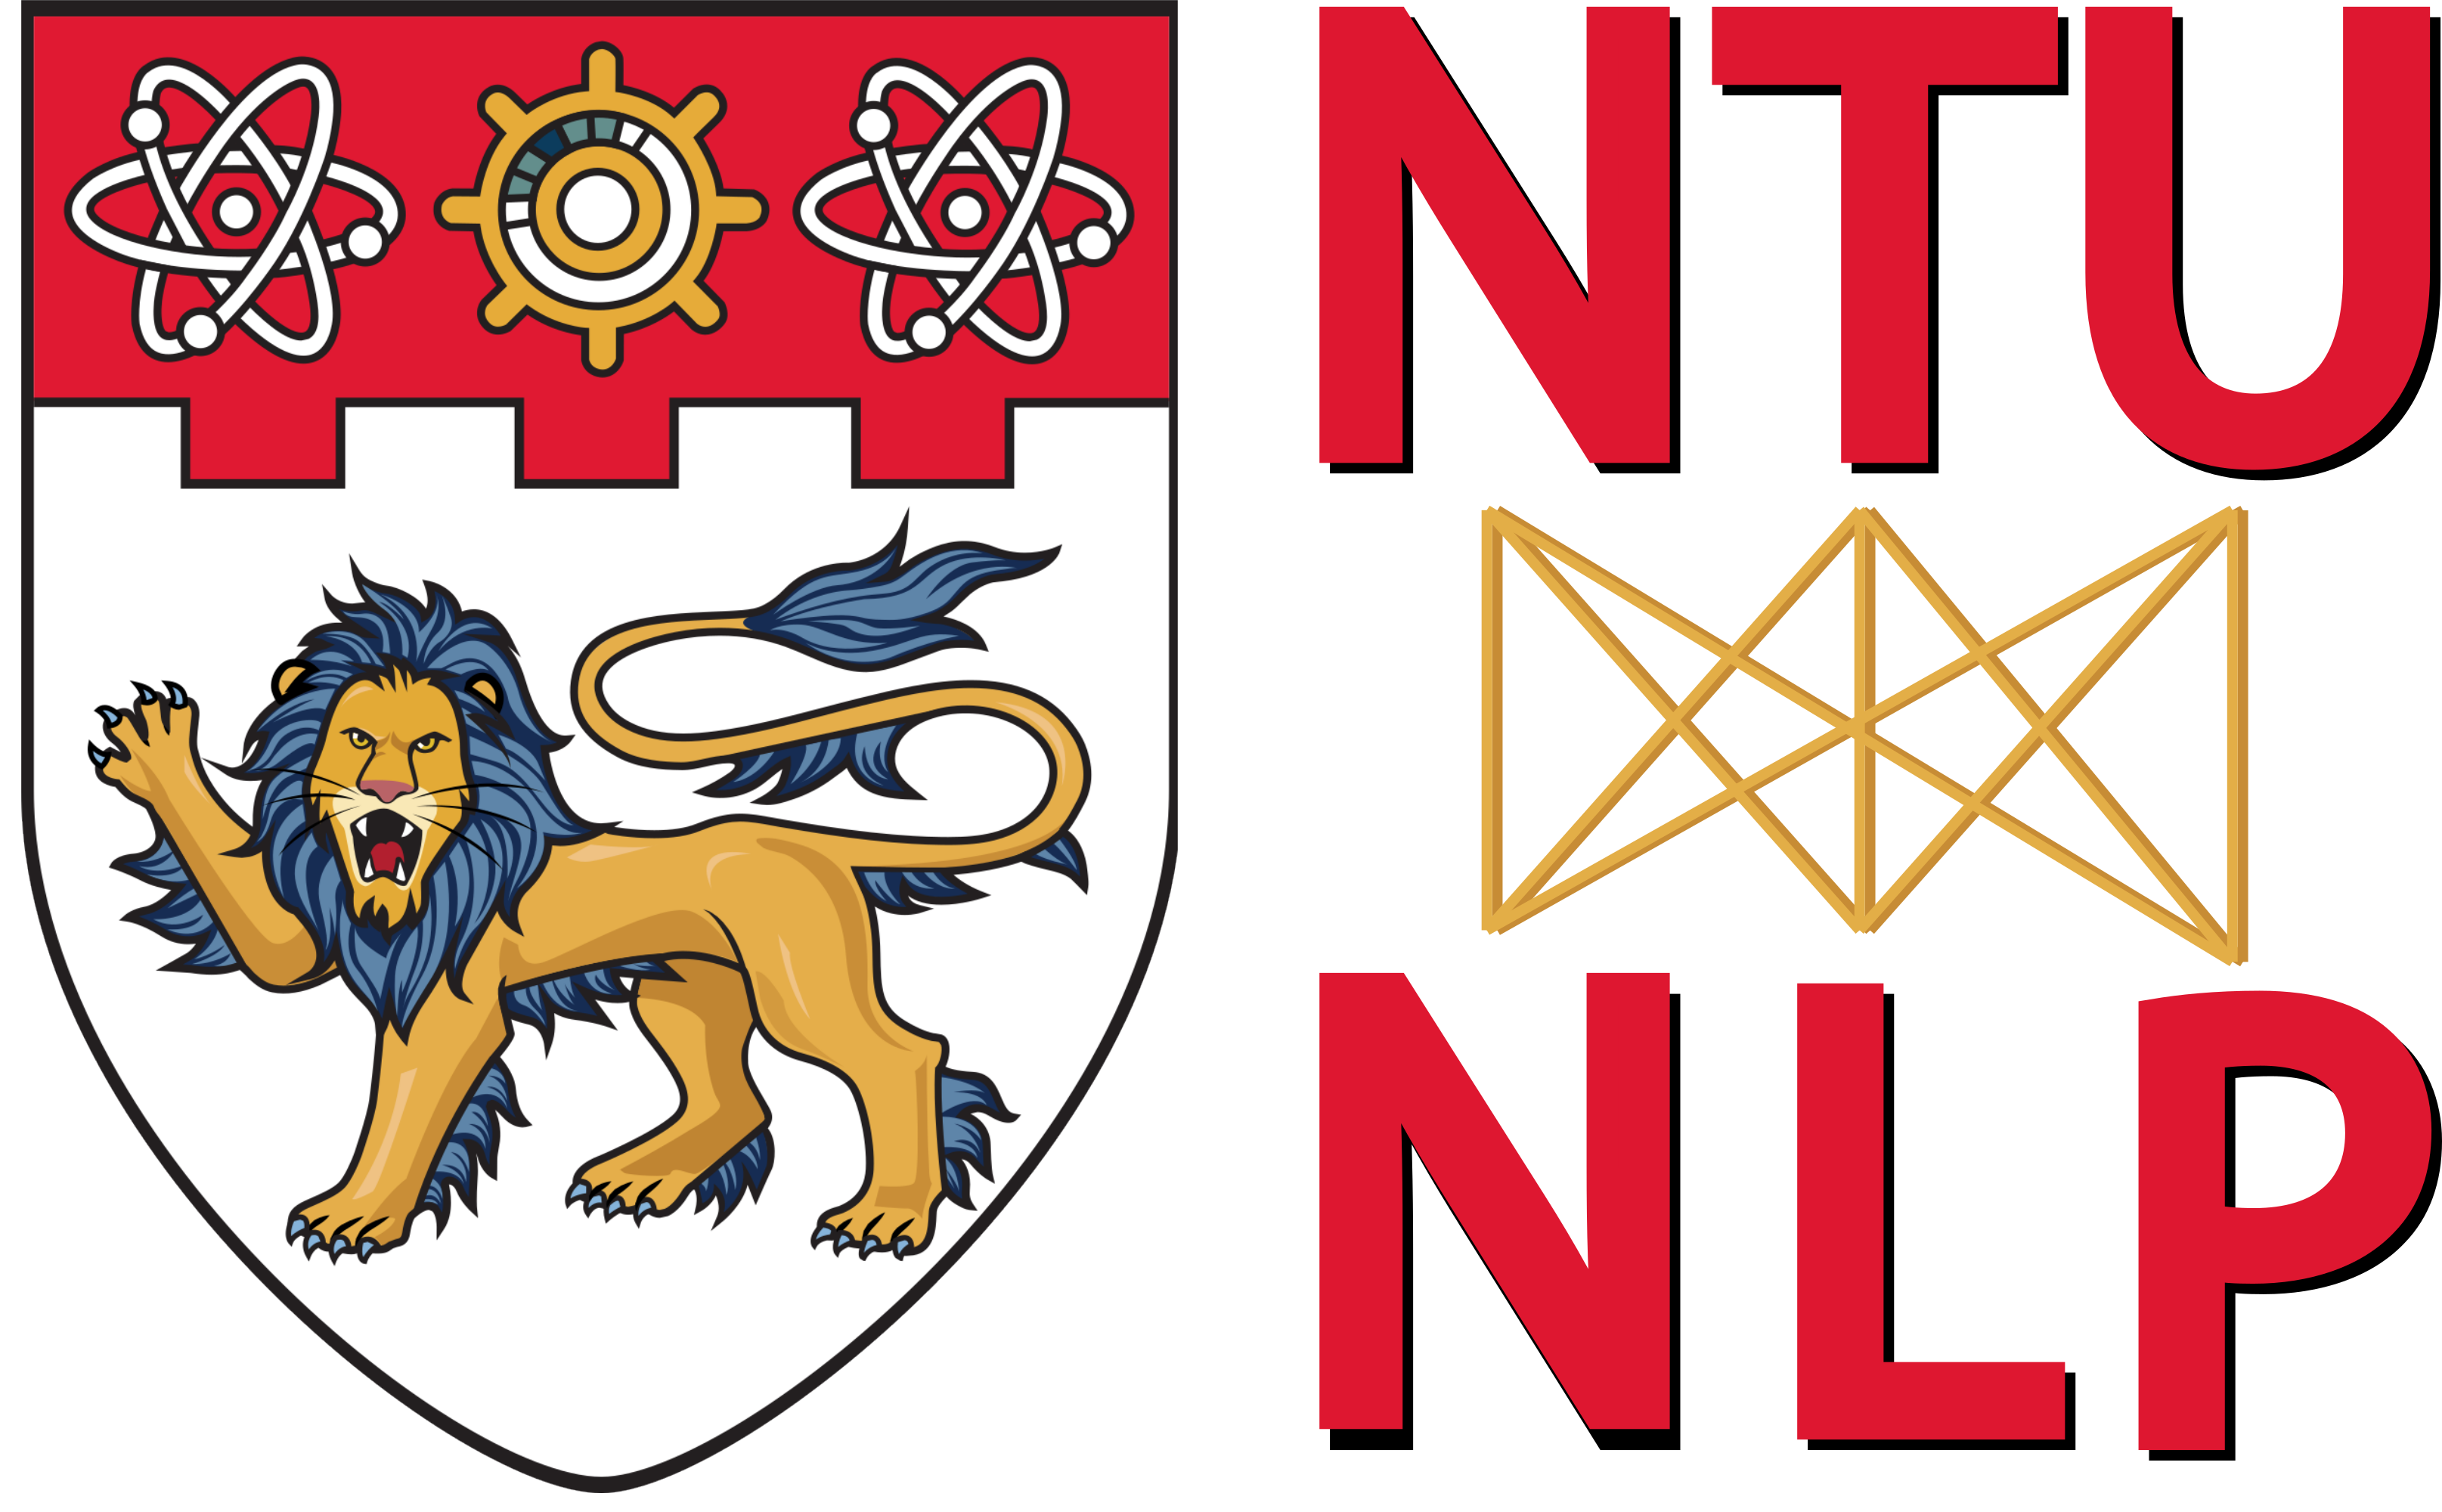 NTU-NLP